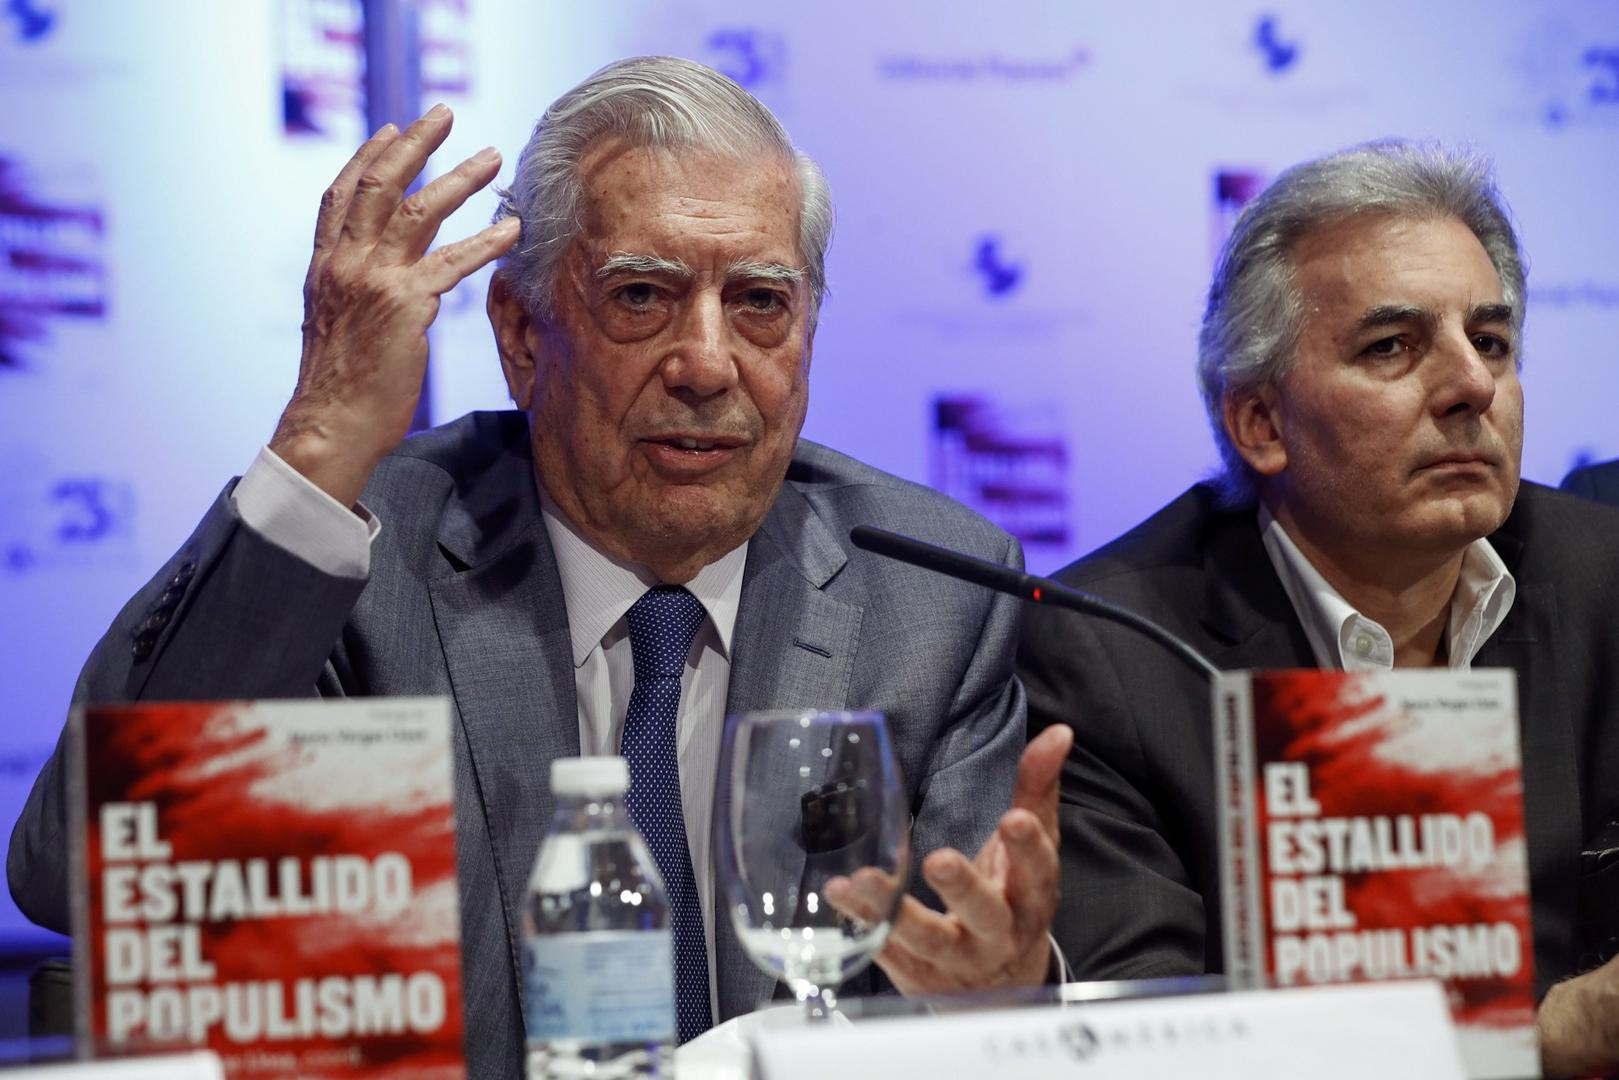 Mario y Álvaro Vargas Llosa ¡Garantes de Incapaces y Corruptos!